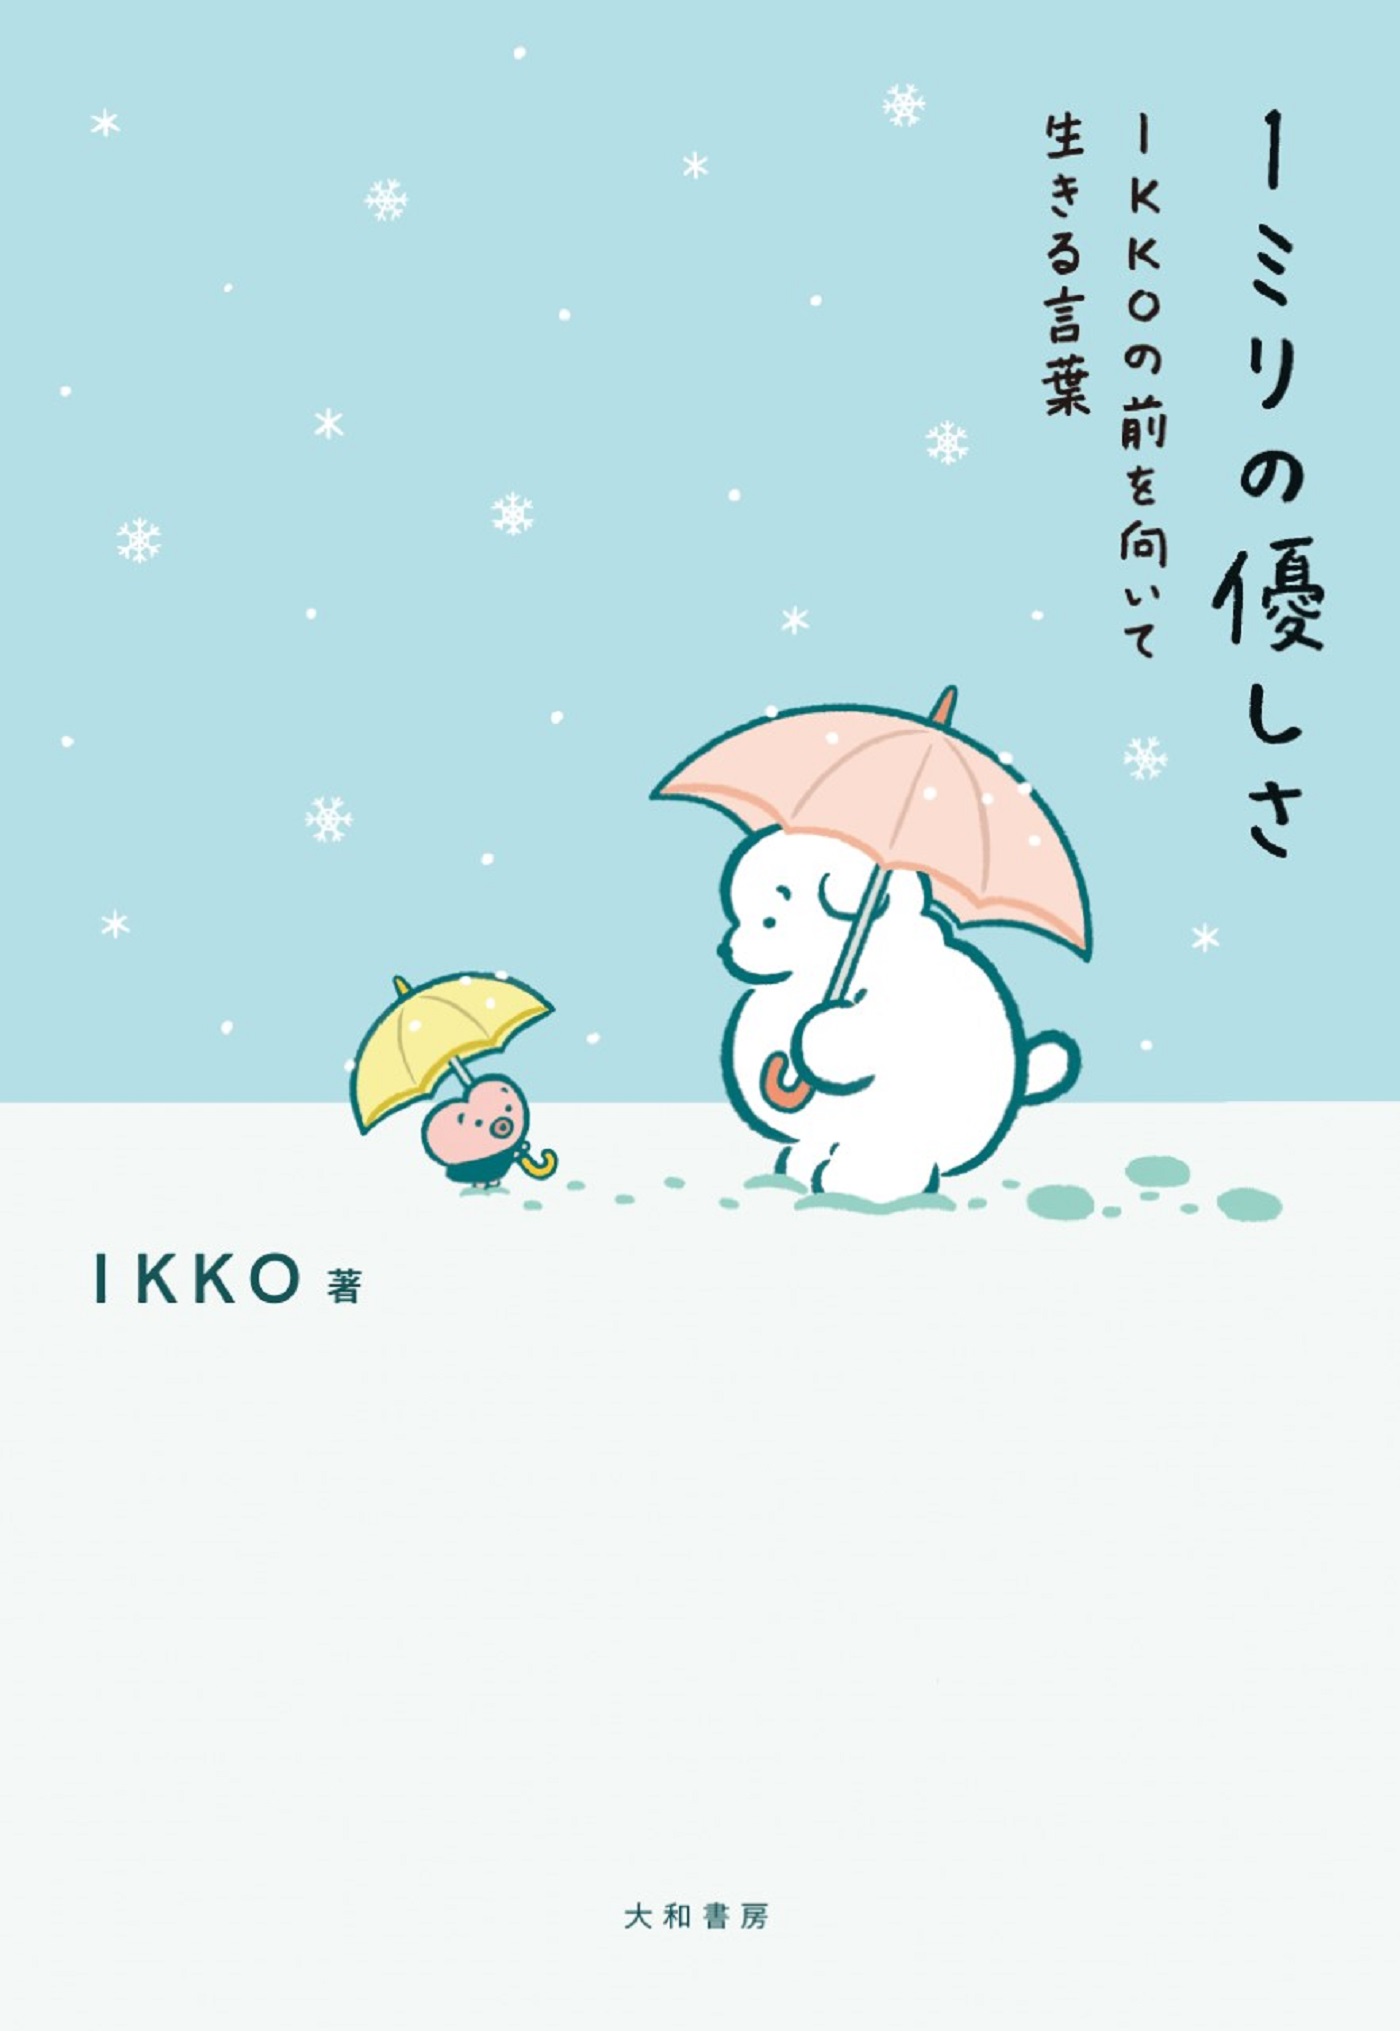 道 : IKKOの字語りエッセイ - アート